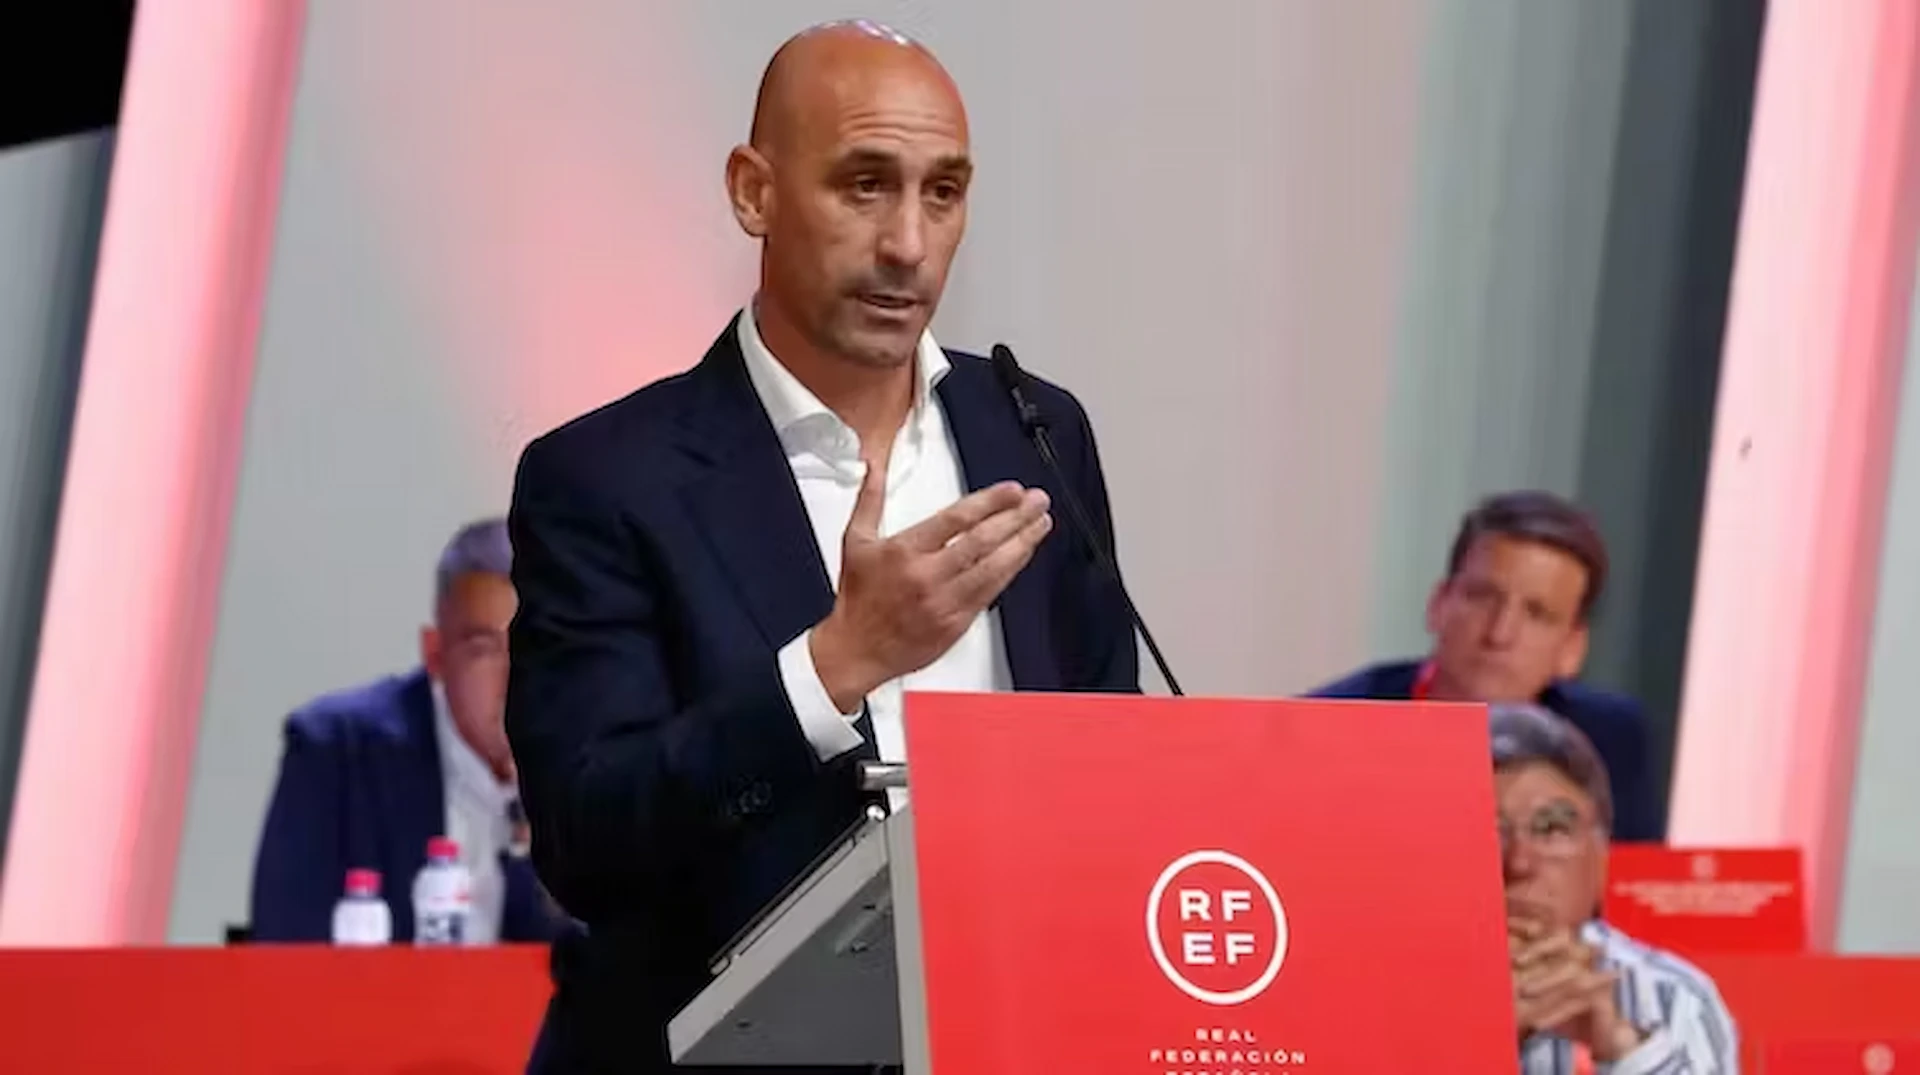 Luis Rubiales en un momento del discurso que dio en la asamblea extraordinaria de la Real Federación Española de Fútbol el 25 de agosto / Imagen: RTVE - The Conversation